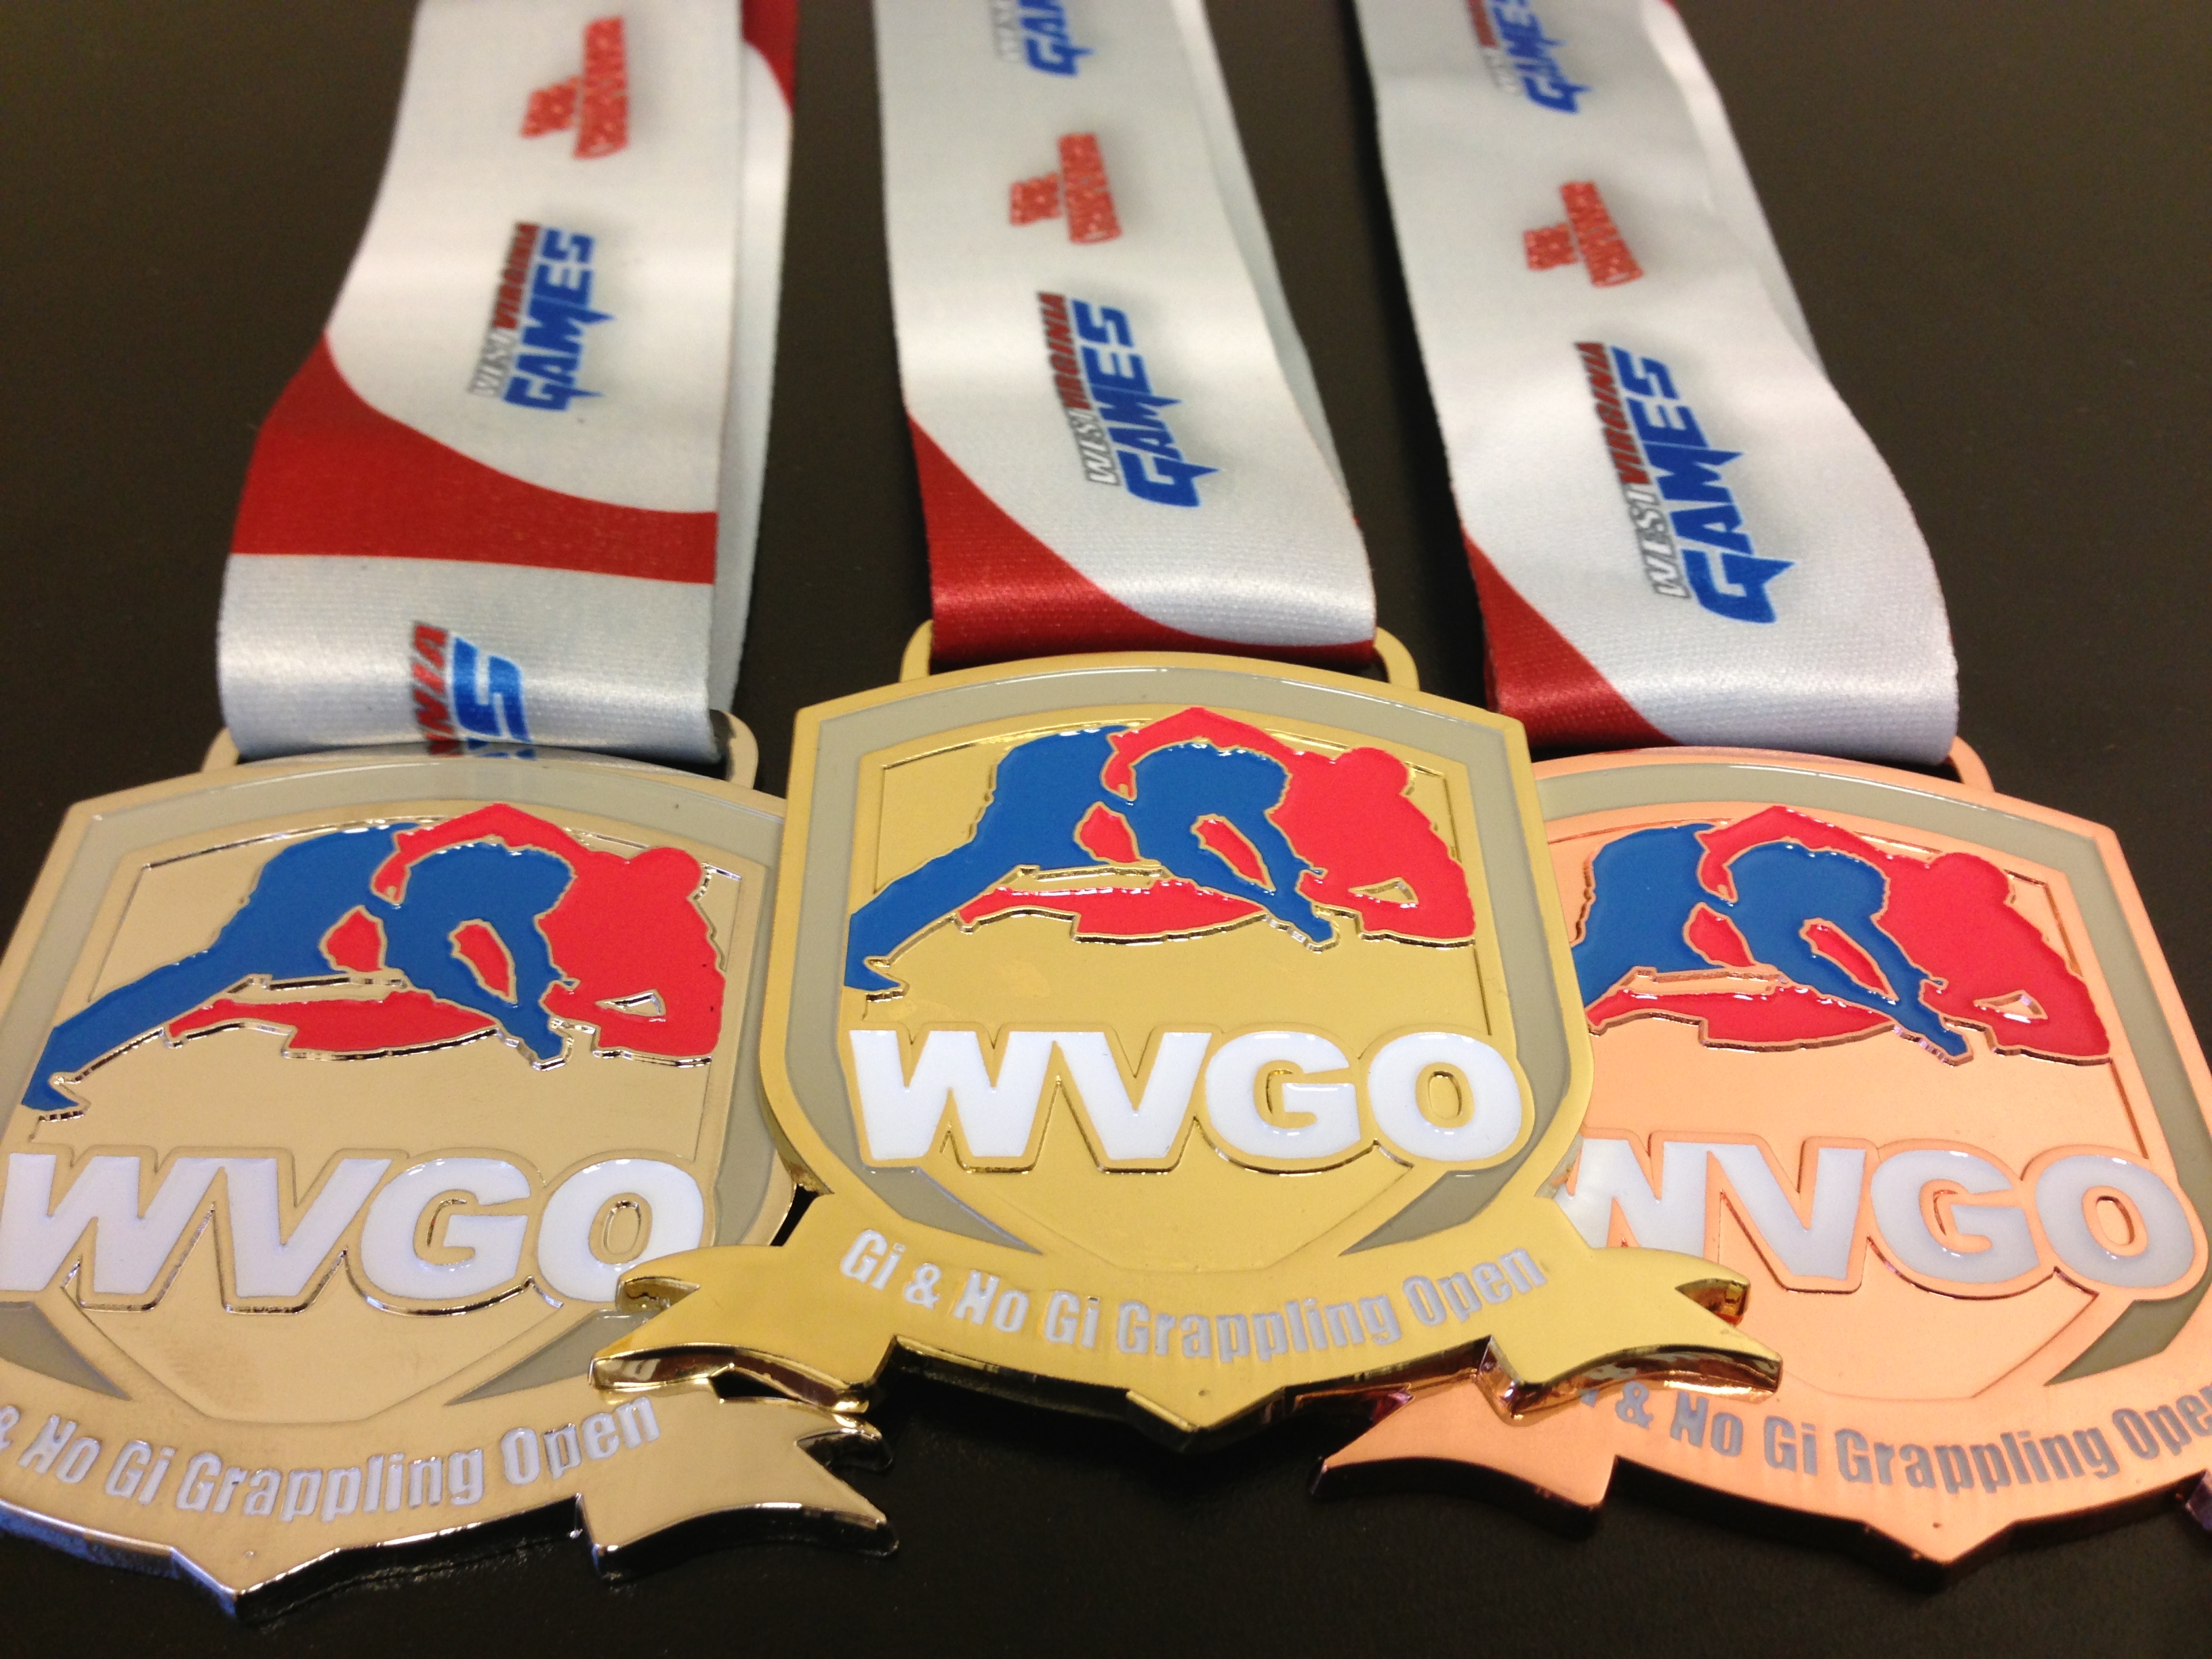 VNG Soldier takes gold at World Jiu-Jitsu No-Gi Championship > Virginia  National Guard > News